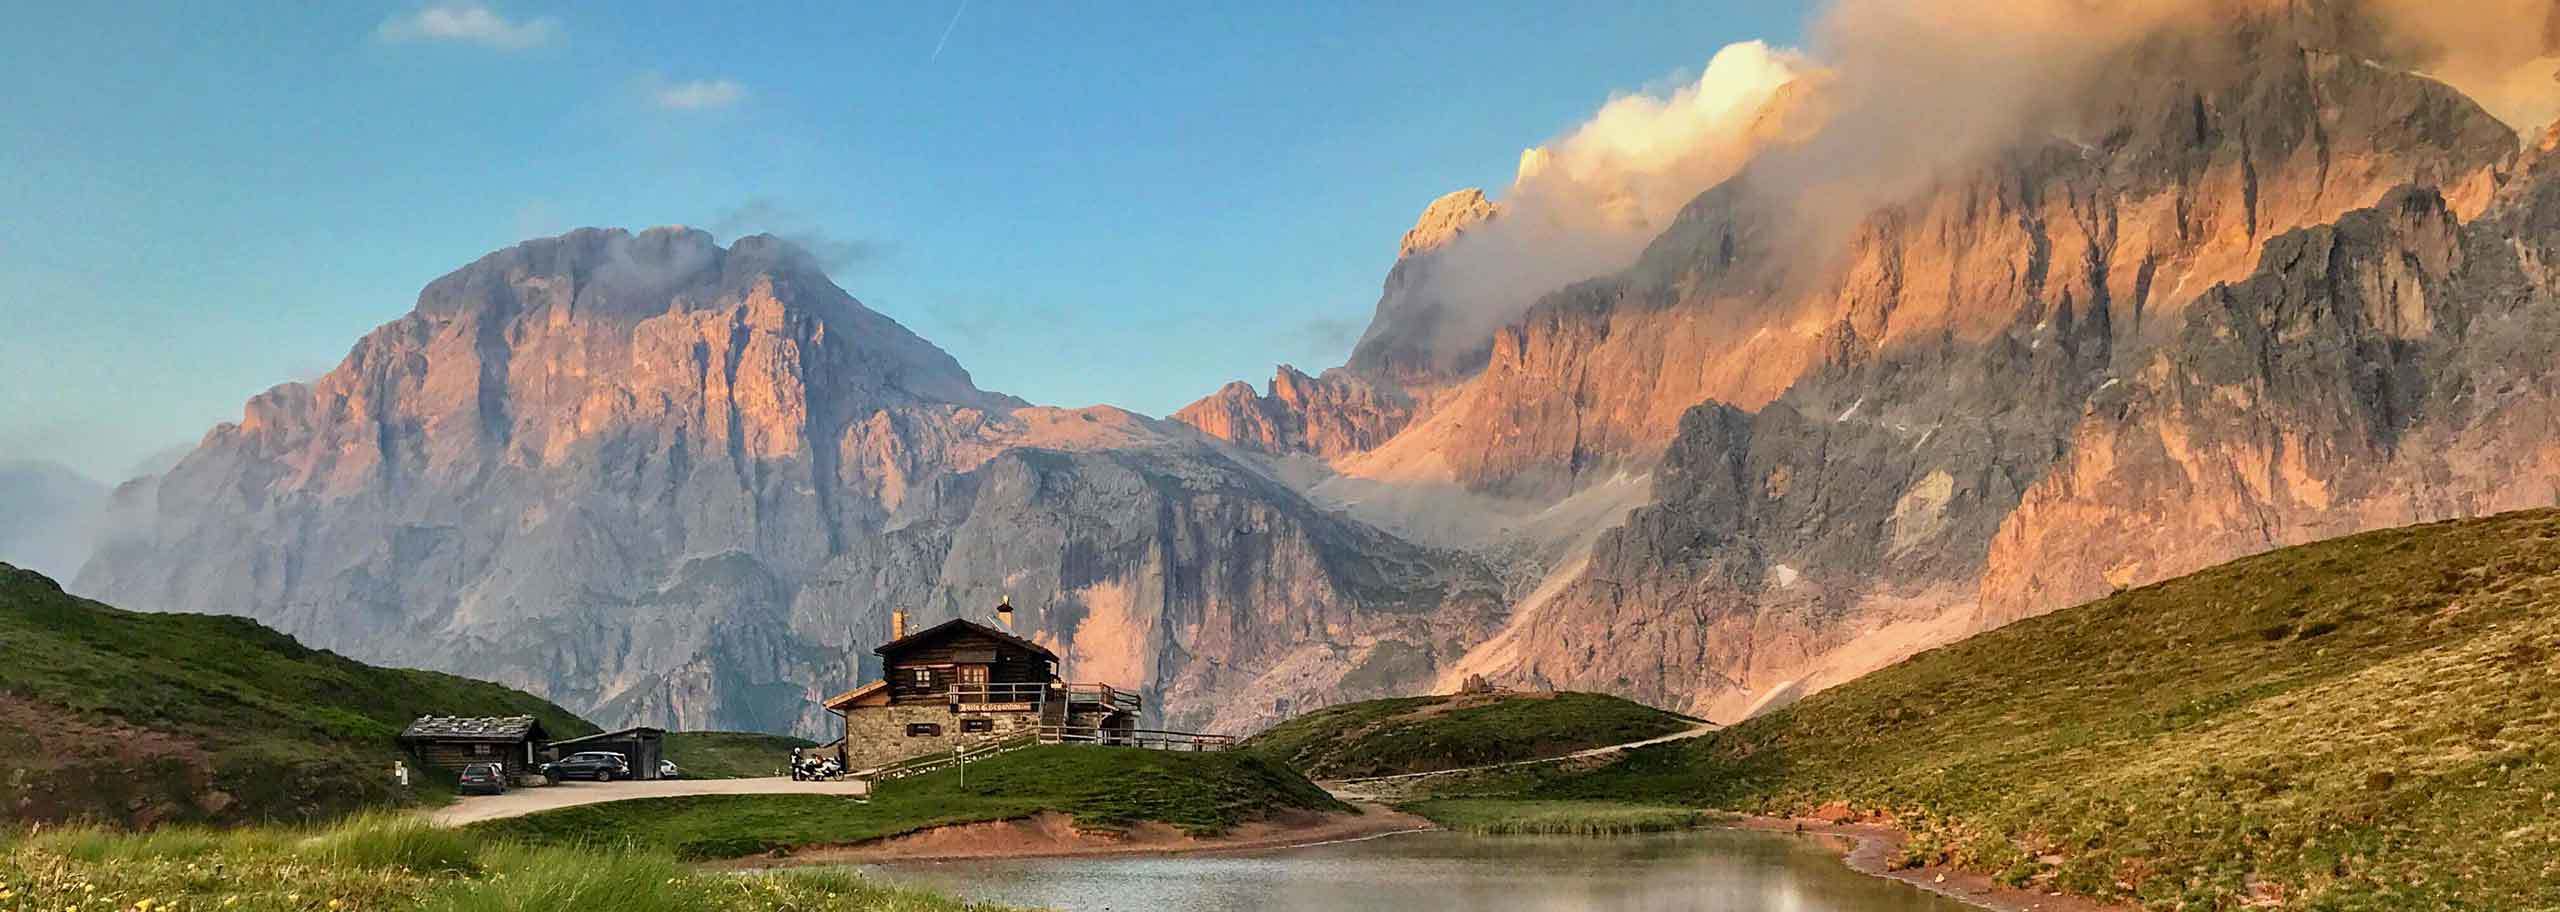 San Martino di Castrozza Guide Alpine